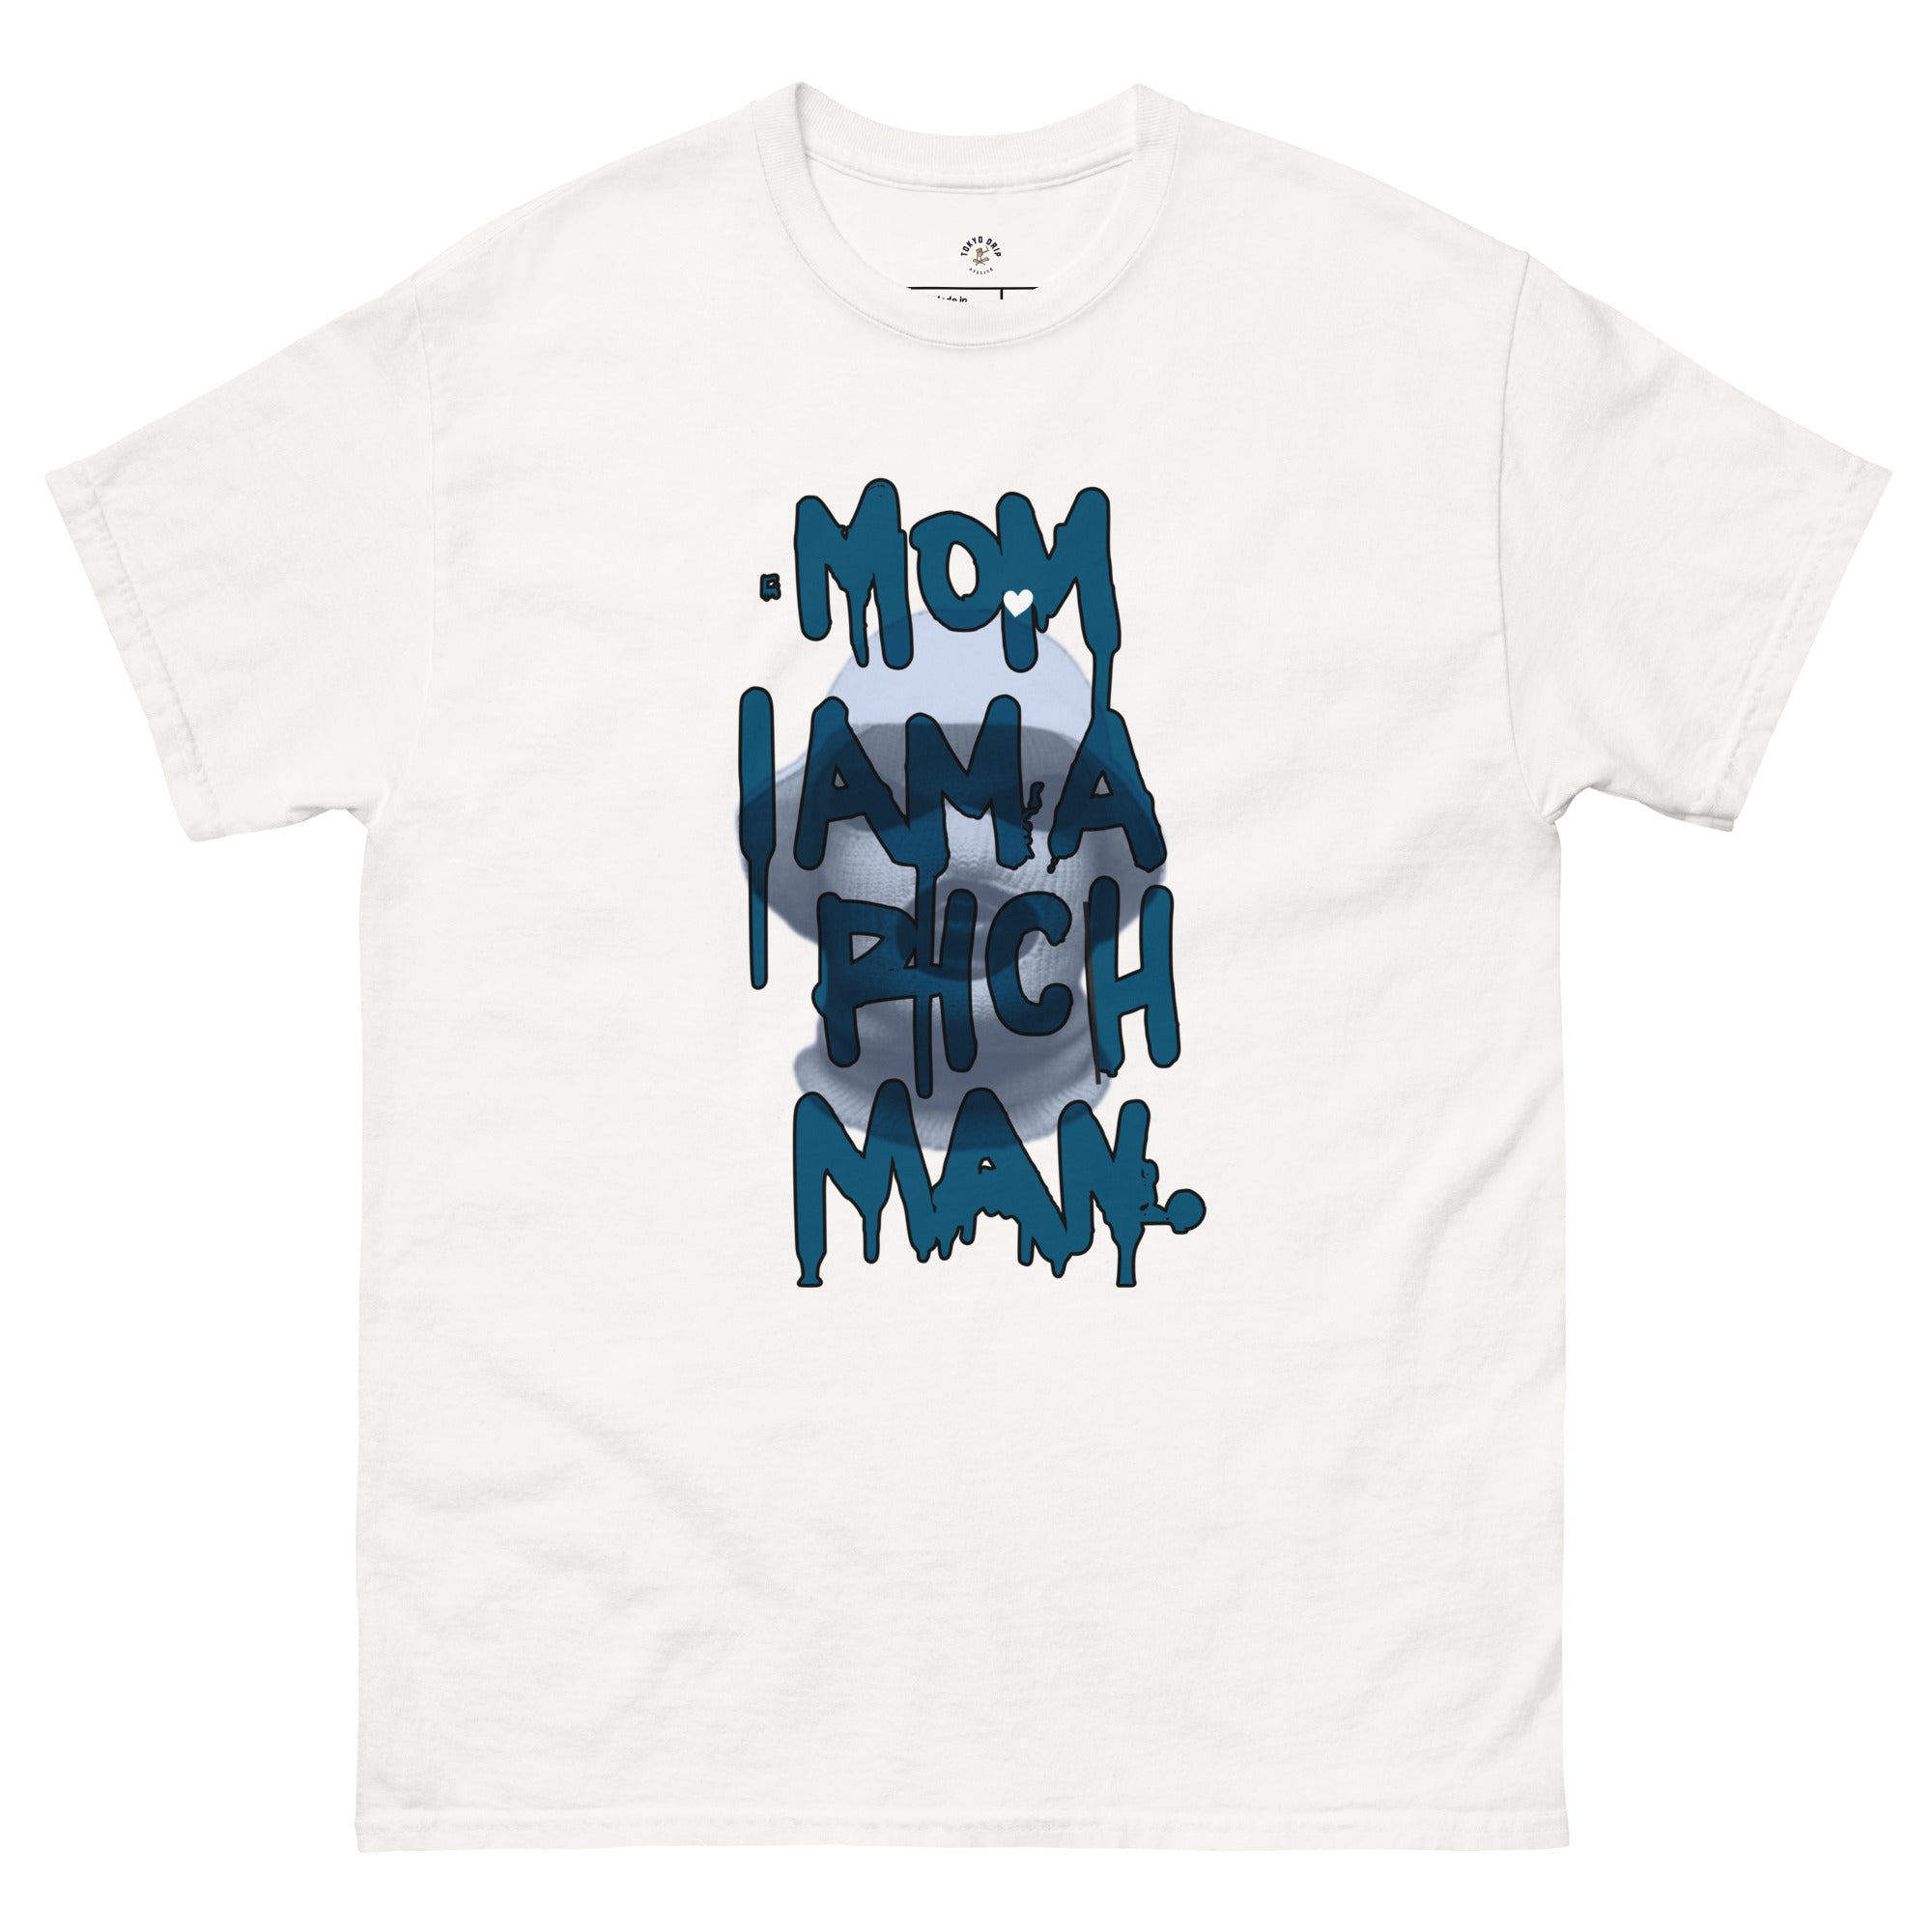 'IM A RICH MAN' t-shirt